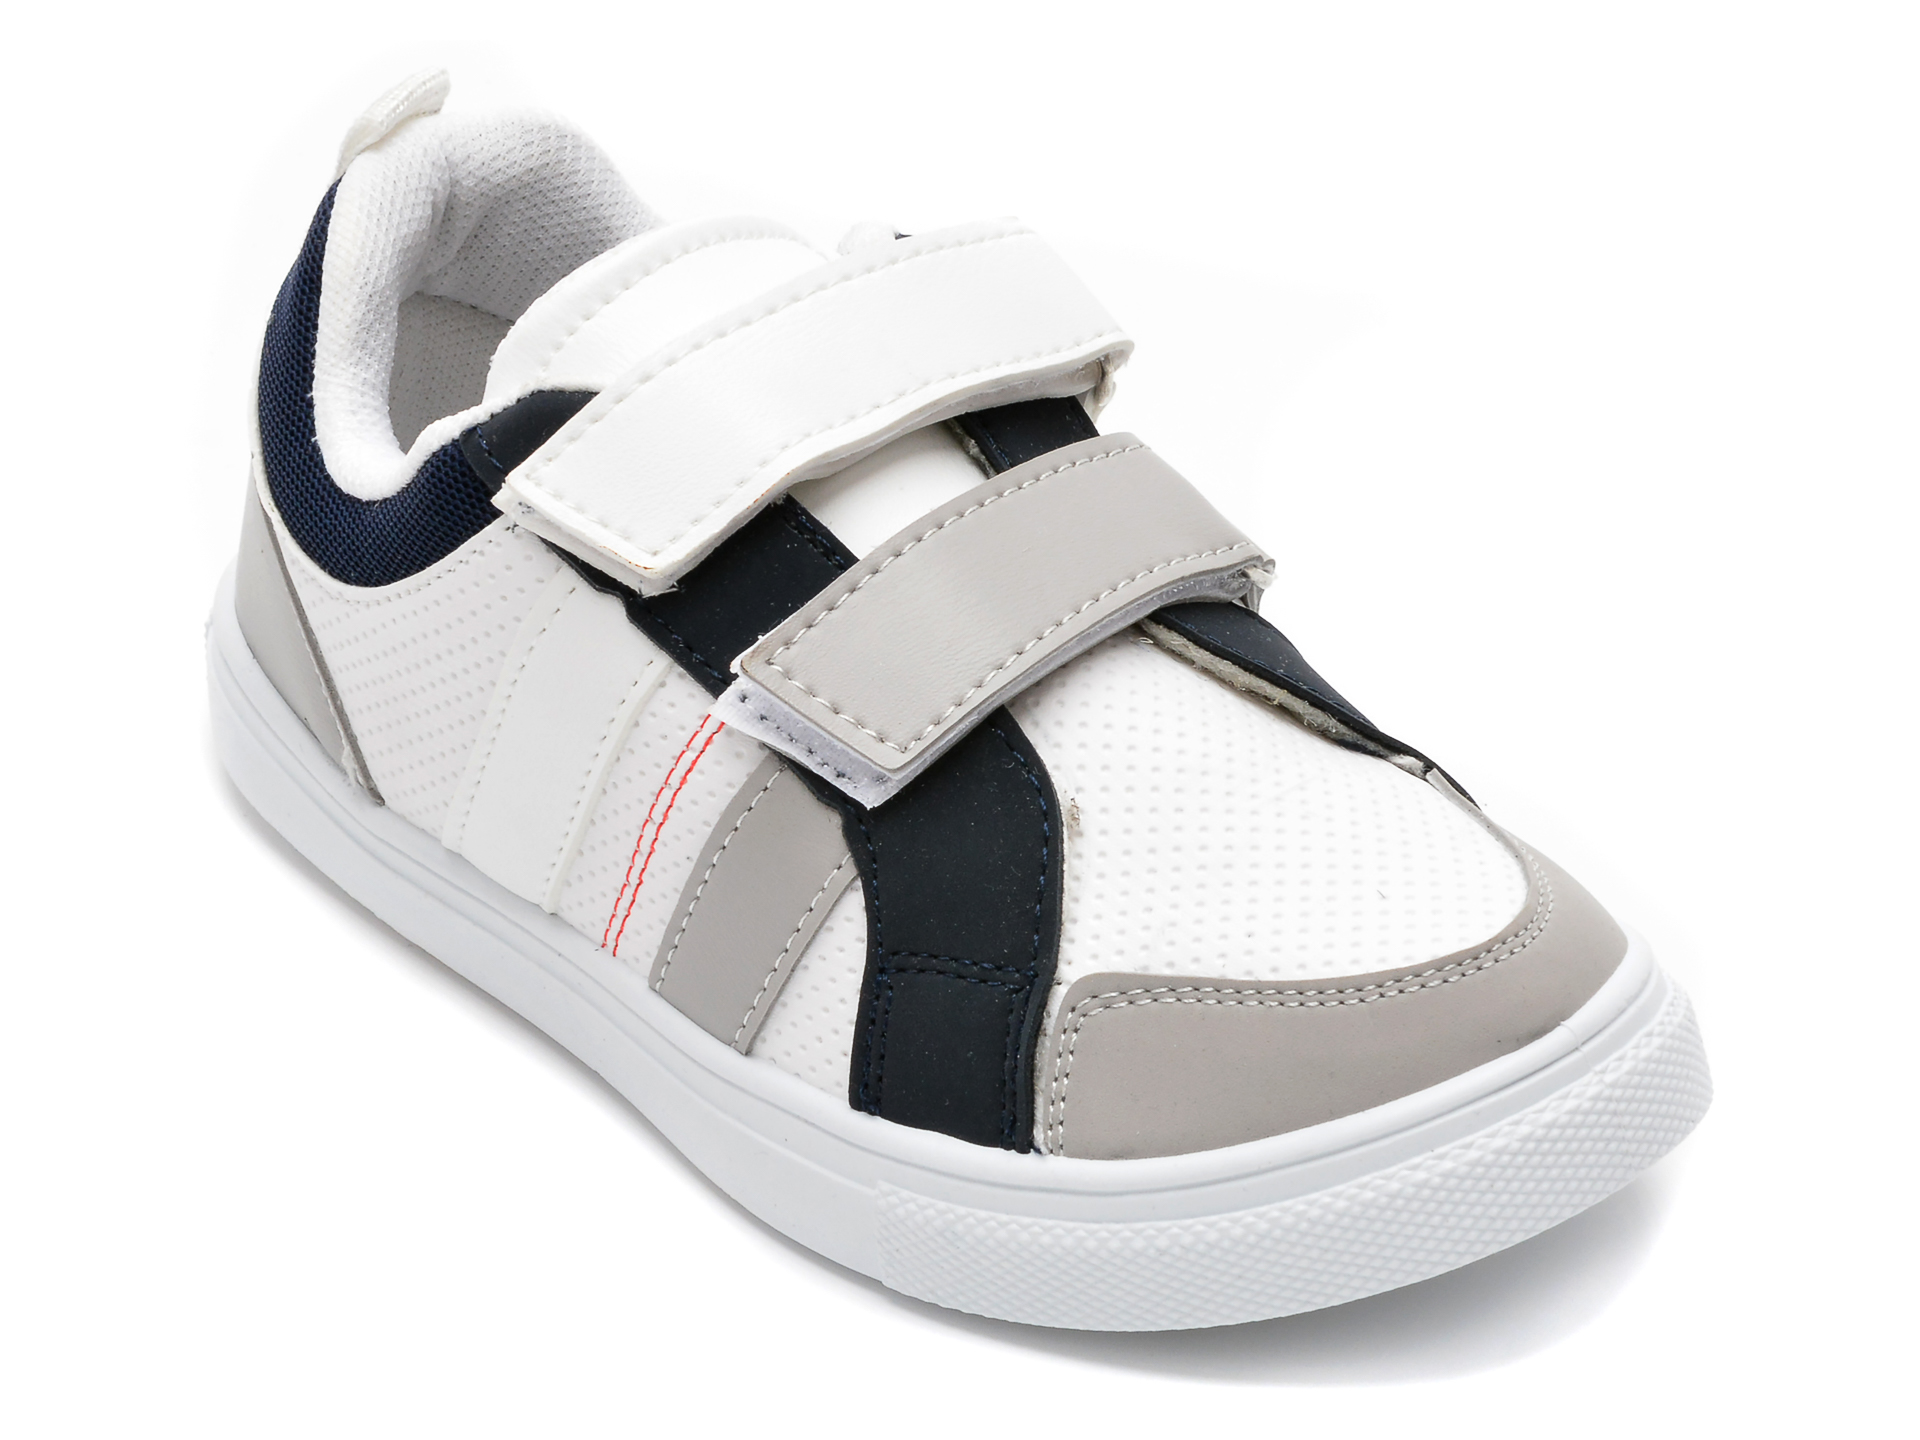 Pantofi sport POLARIS albi, 520209, din piele ecologica otter.ro otter.ro